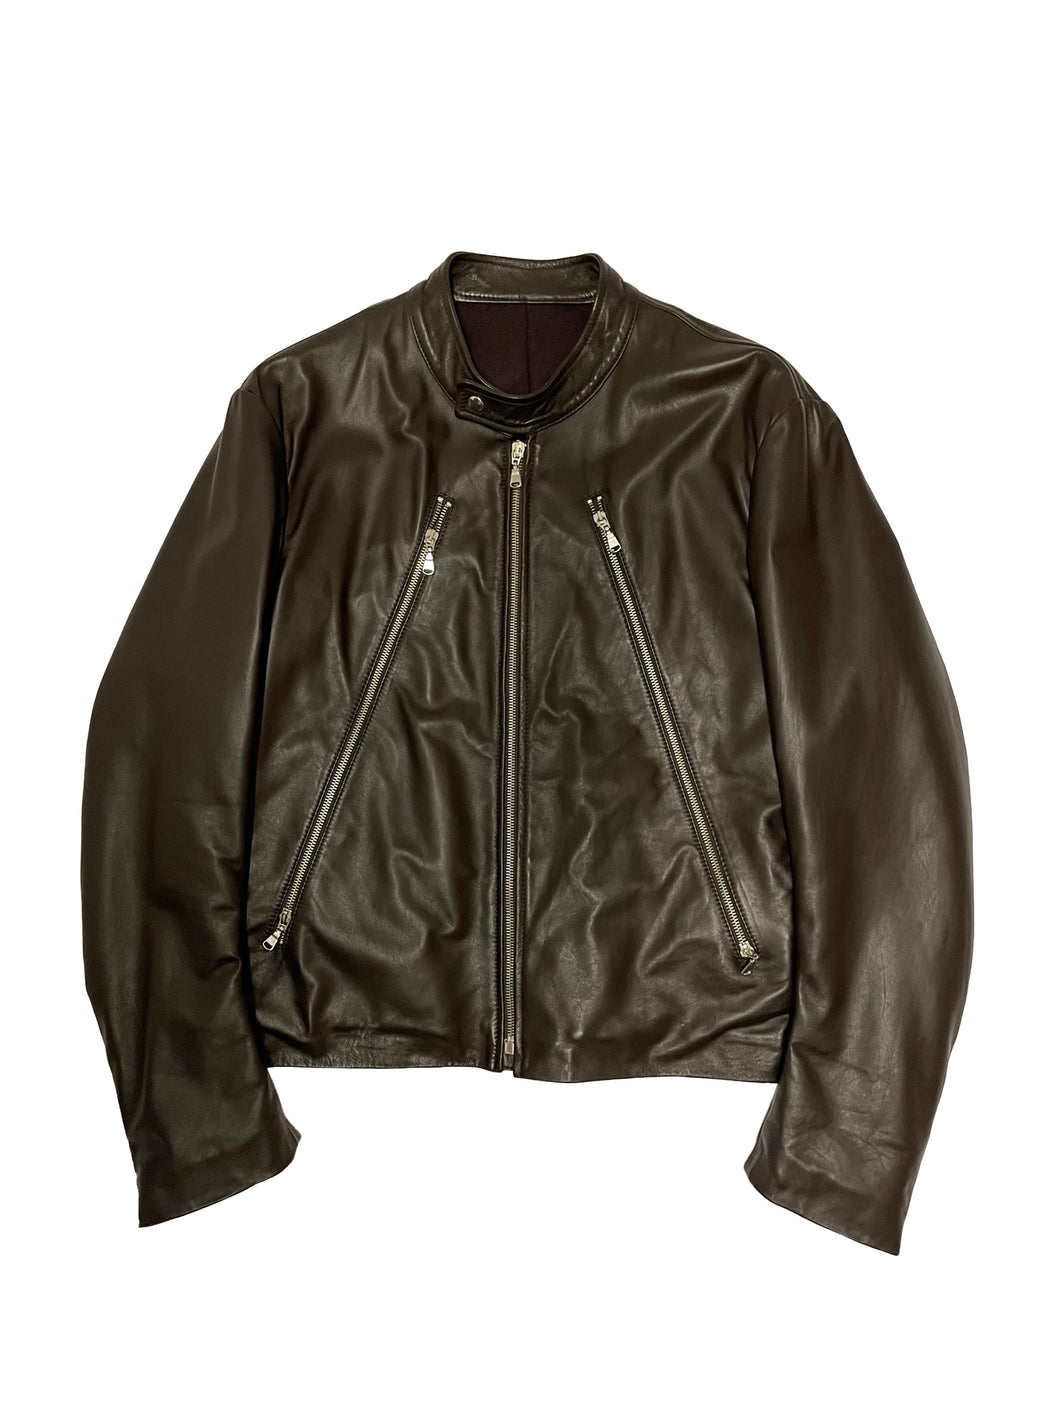 2000’s Maison Margiela sample 5 zip leather jacket